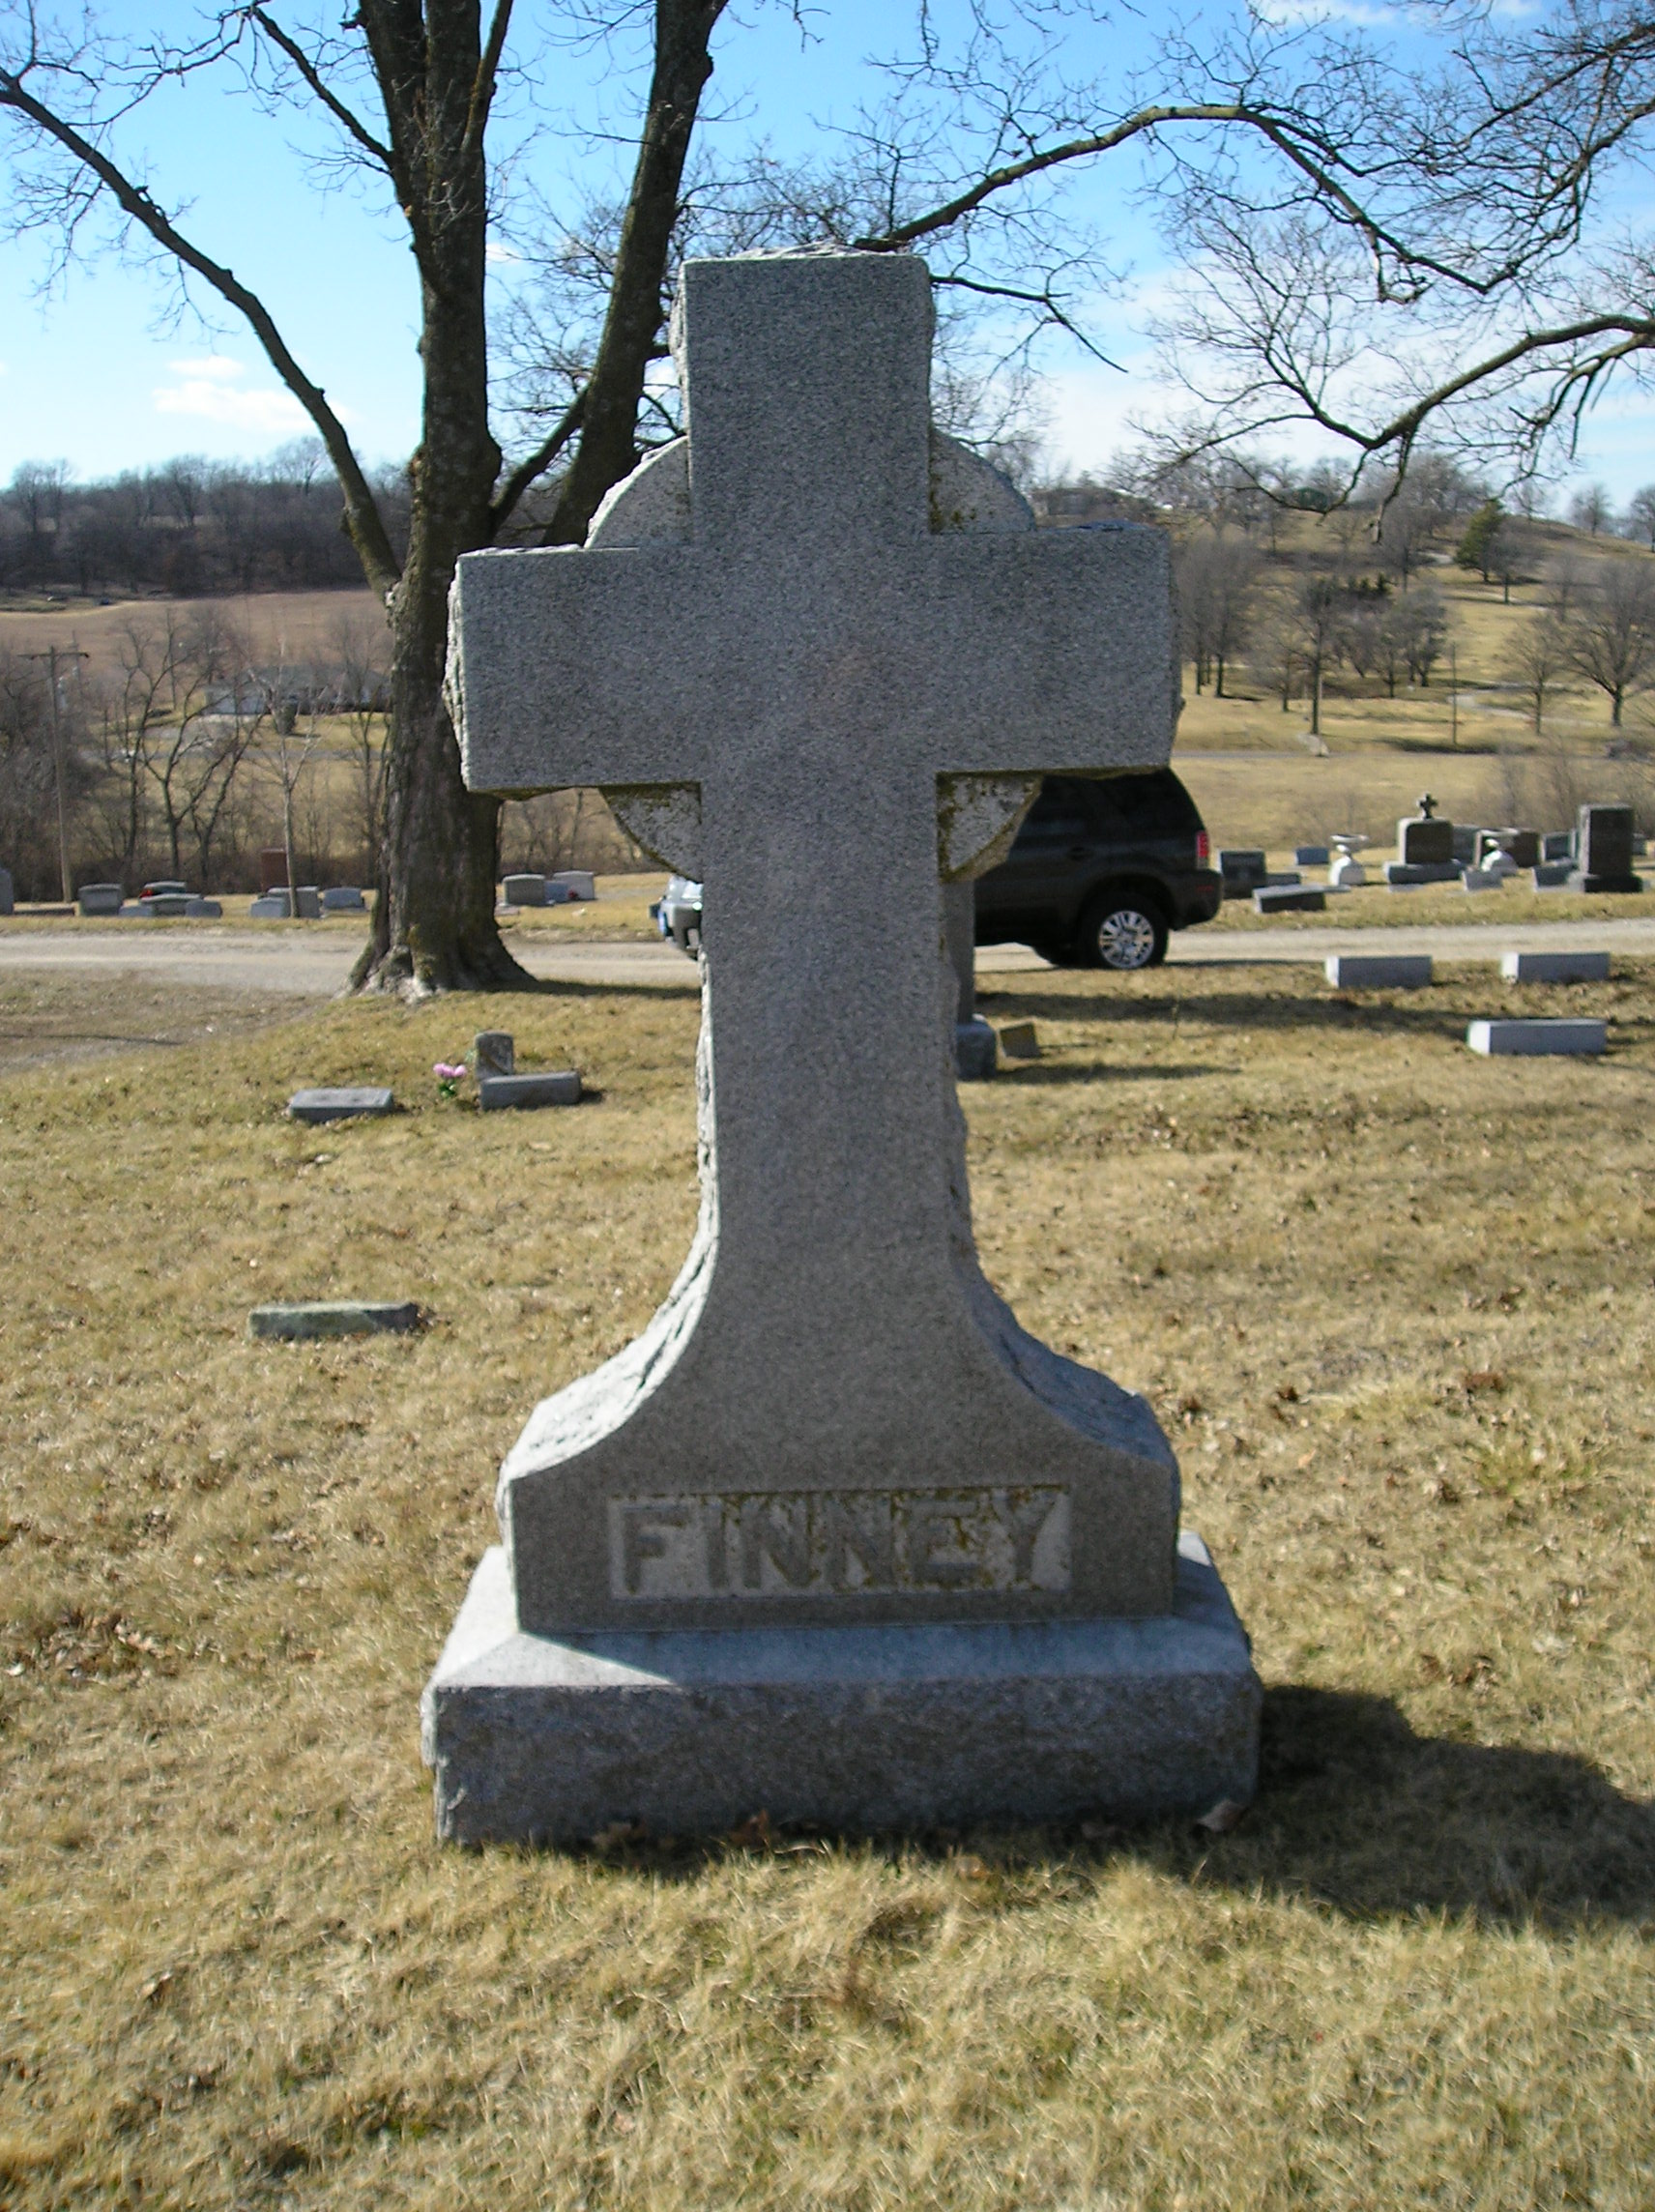 Finney Grave Marker.JPG